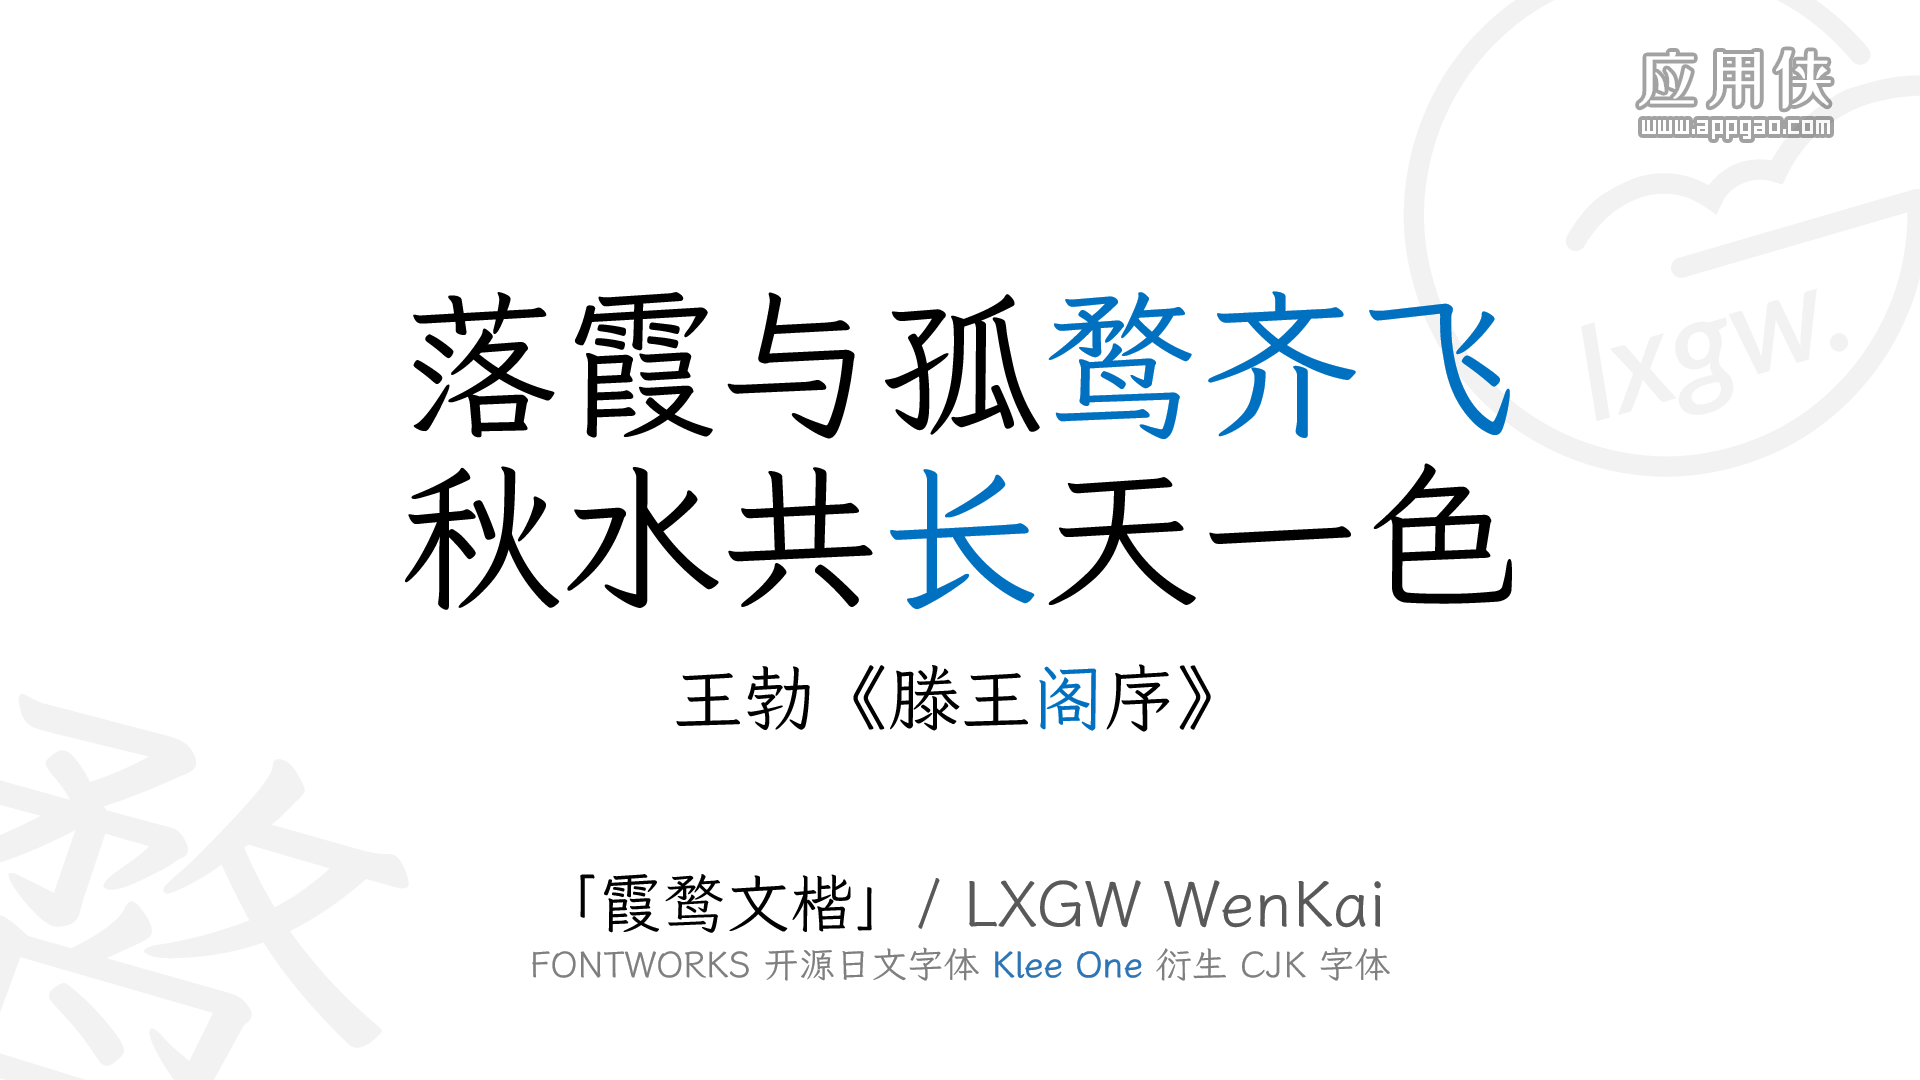 霞鹜文楷 - 一款开源可免费商用中文字体